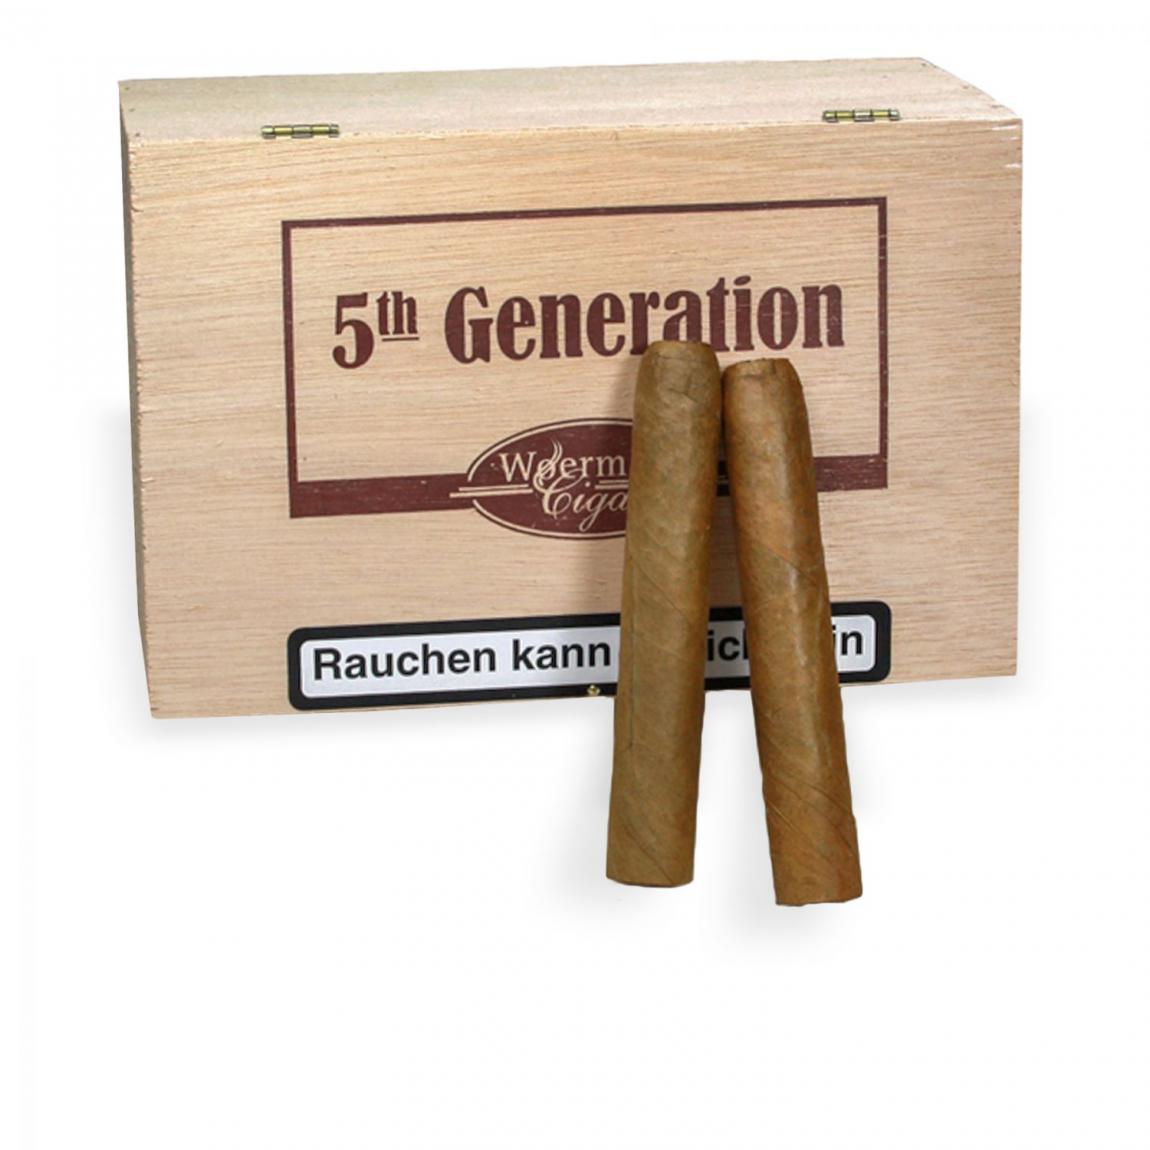 5th Generation »Corona Sumatra« 50er Kiste